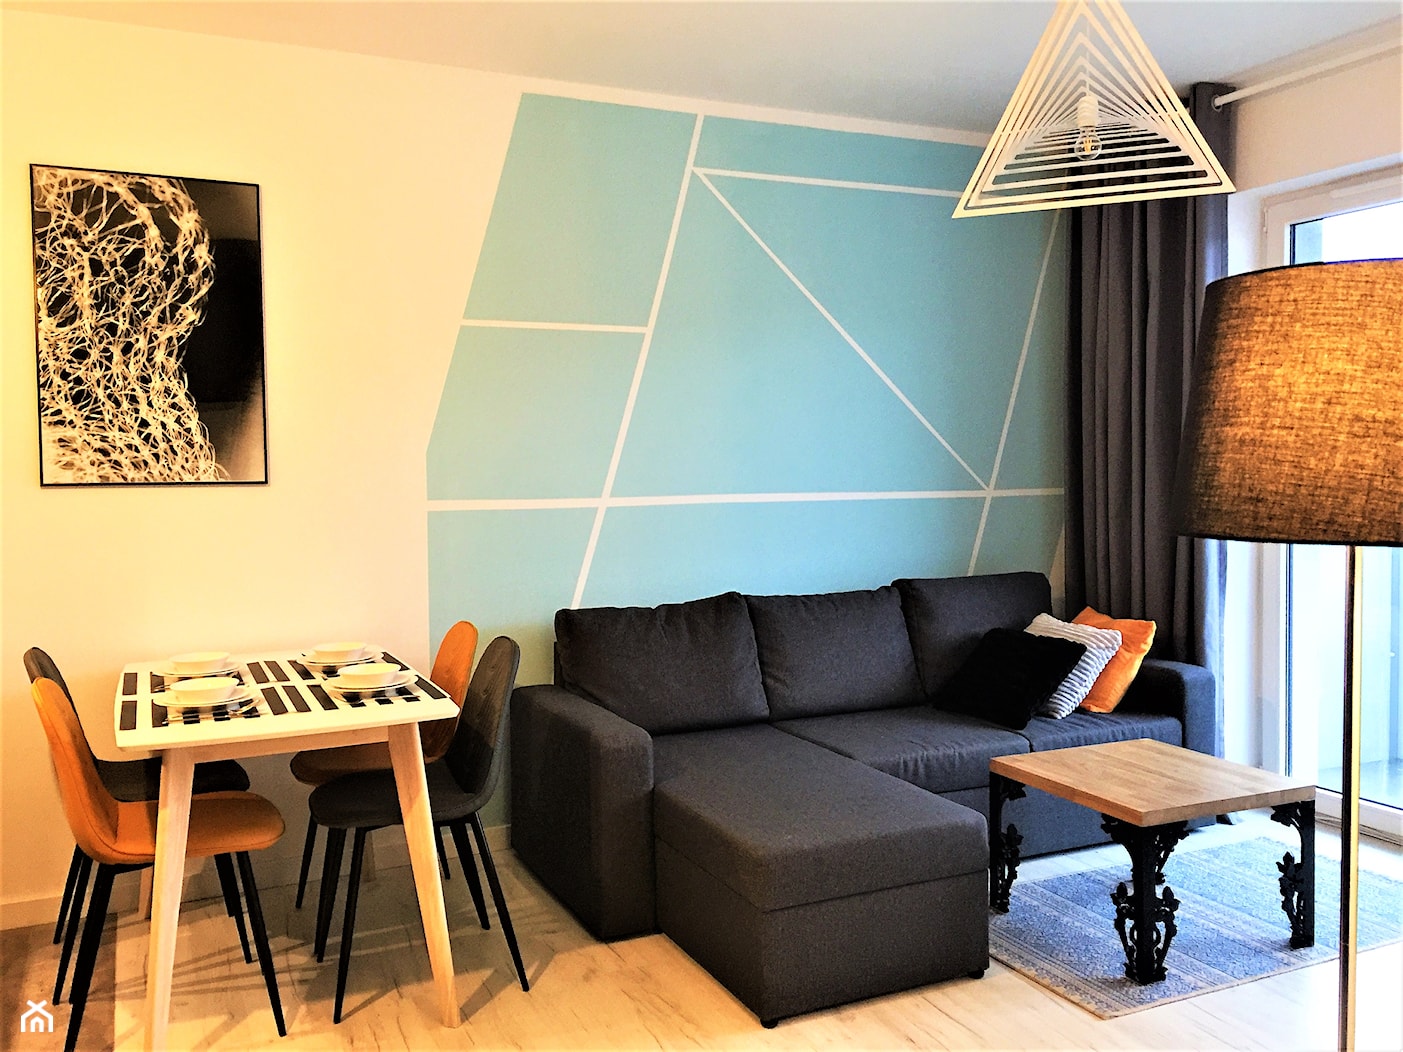 Realizacja w Promenadach Wrocławskich – mieszkanie na wynajem. - Salon, styl nowoczesny - zdjęcie od DekoDeko - Homebook